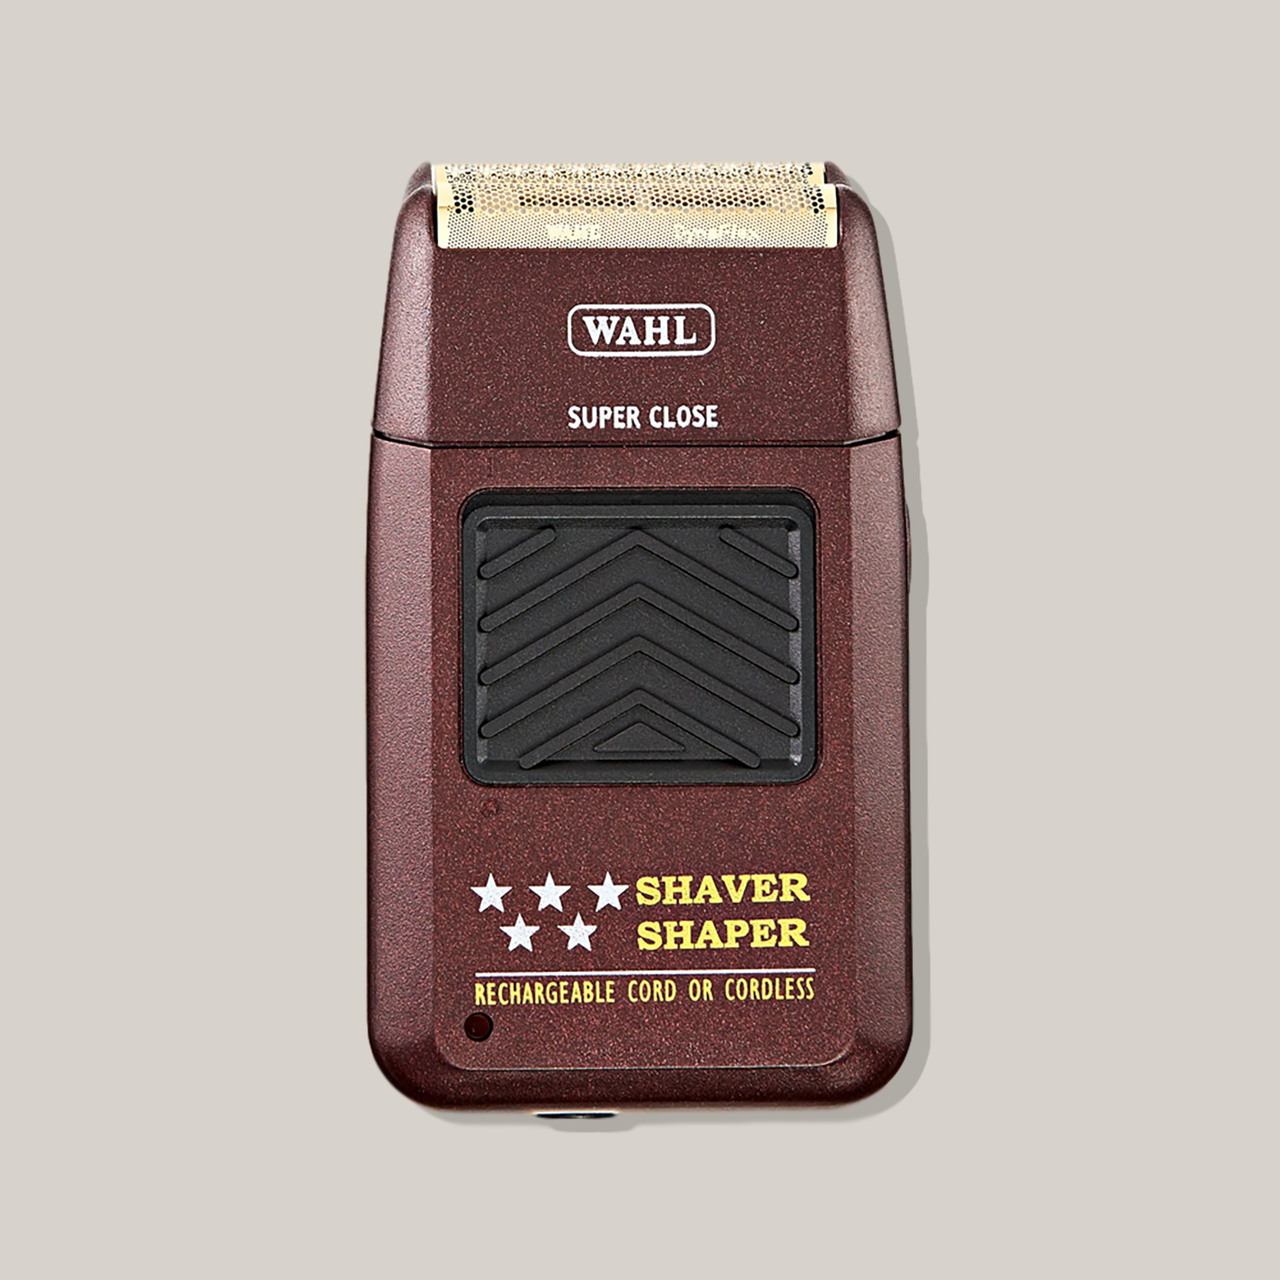 Wahl 5Star Shaver/Shaper #55602 